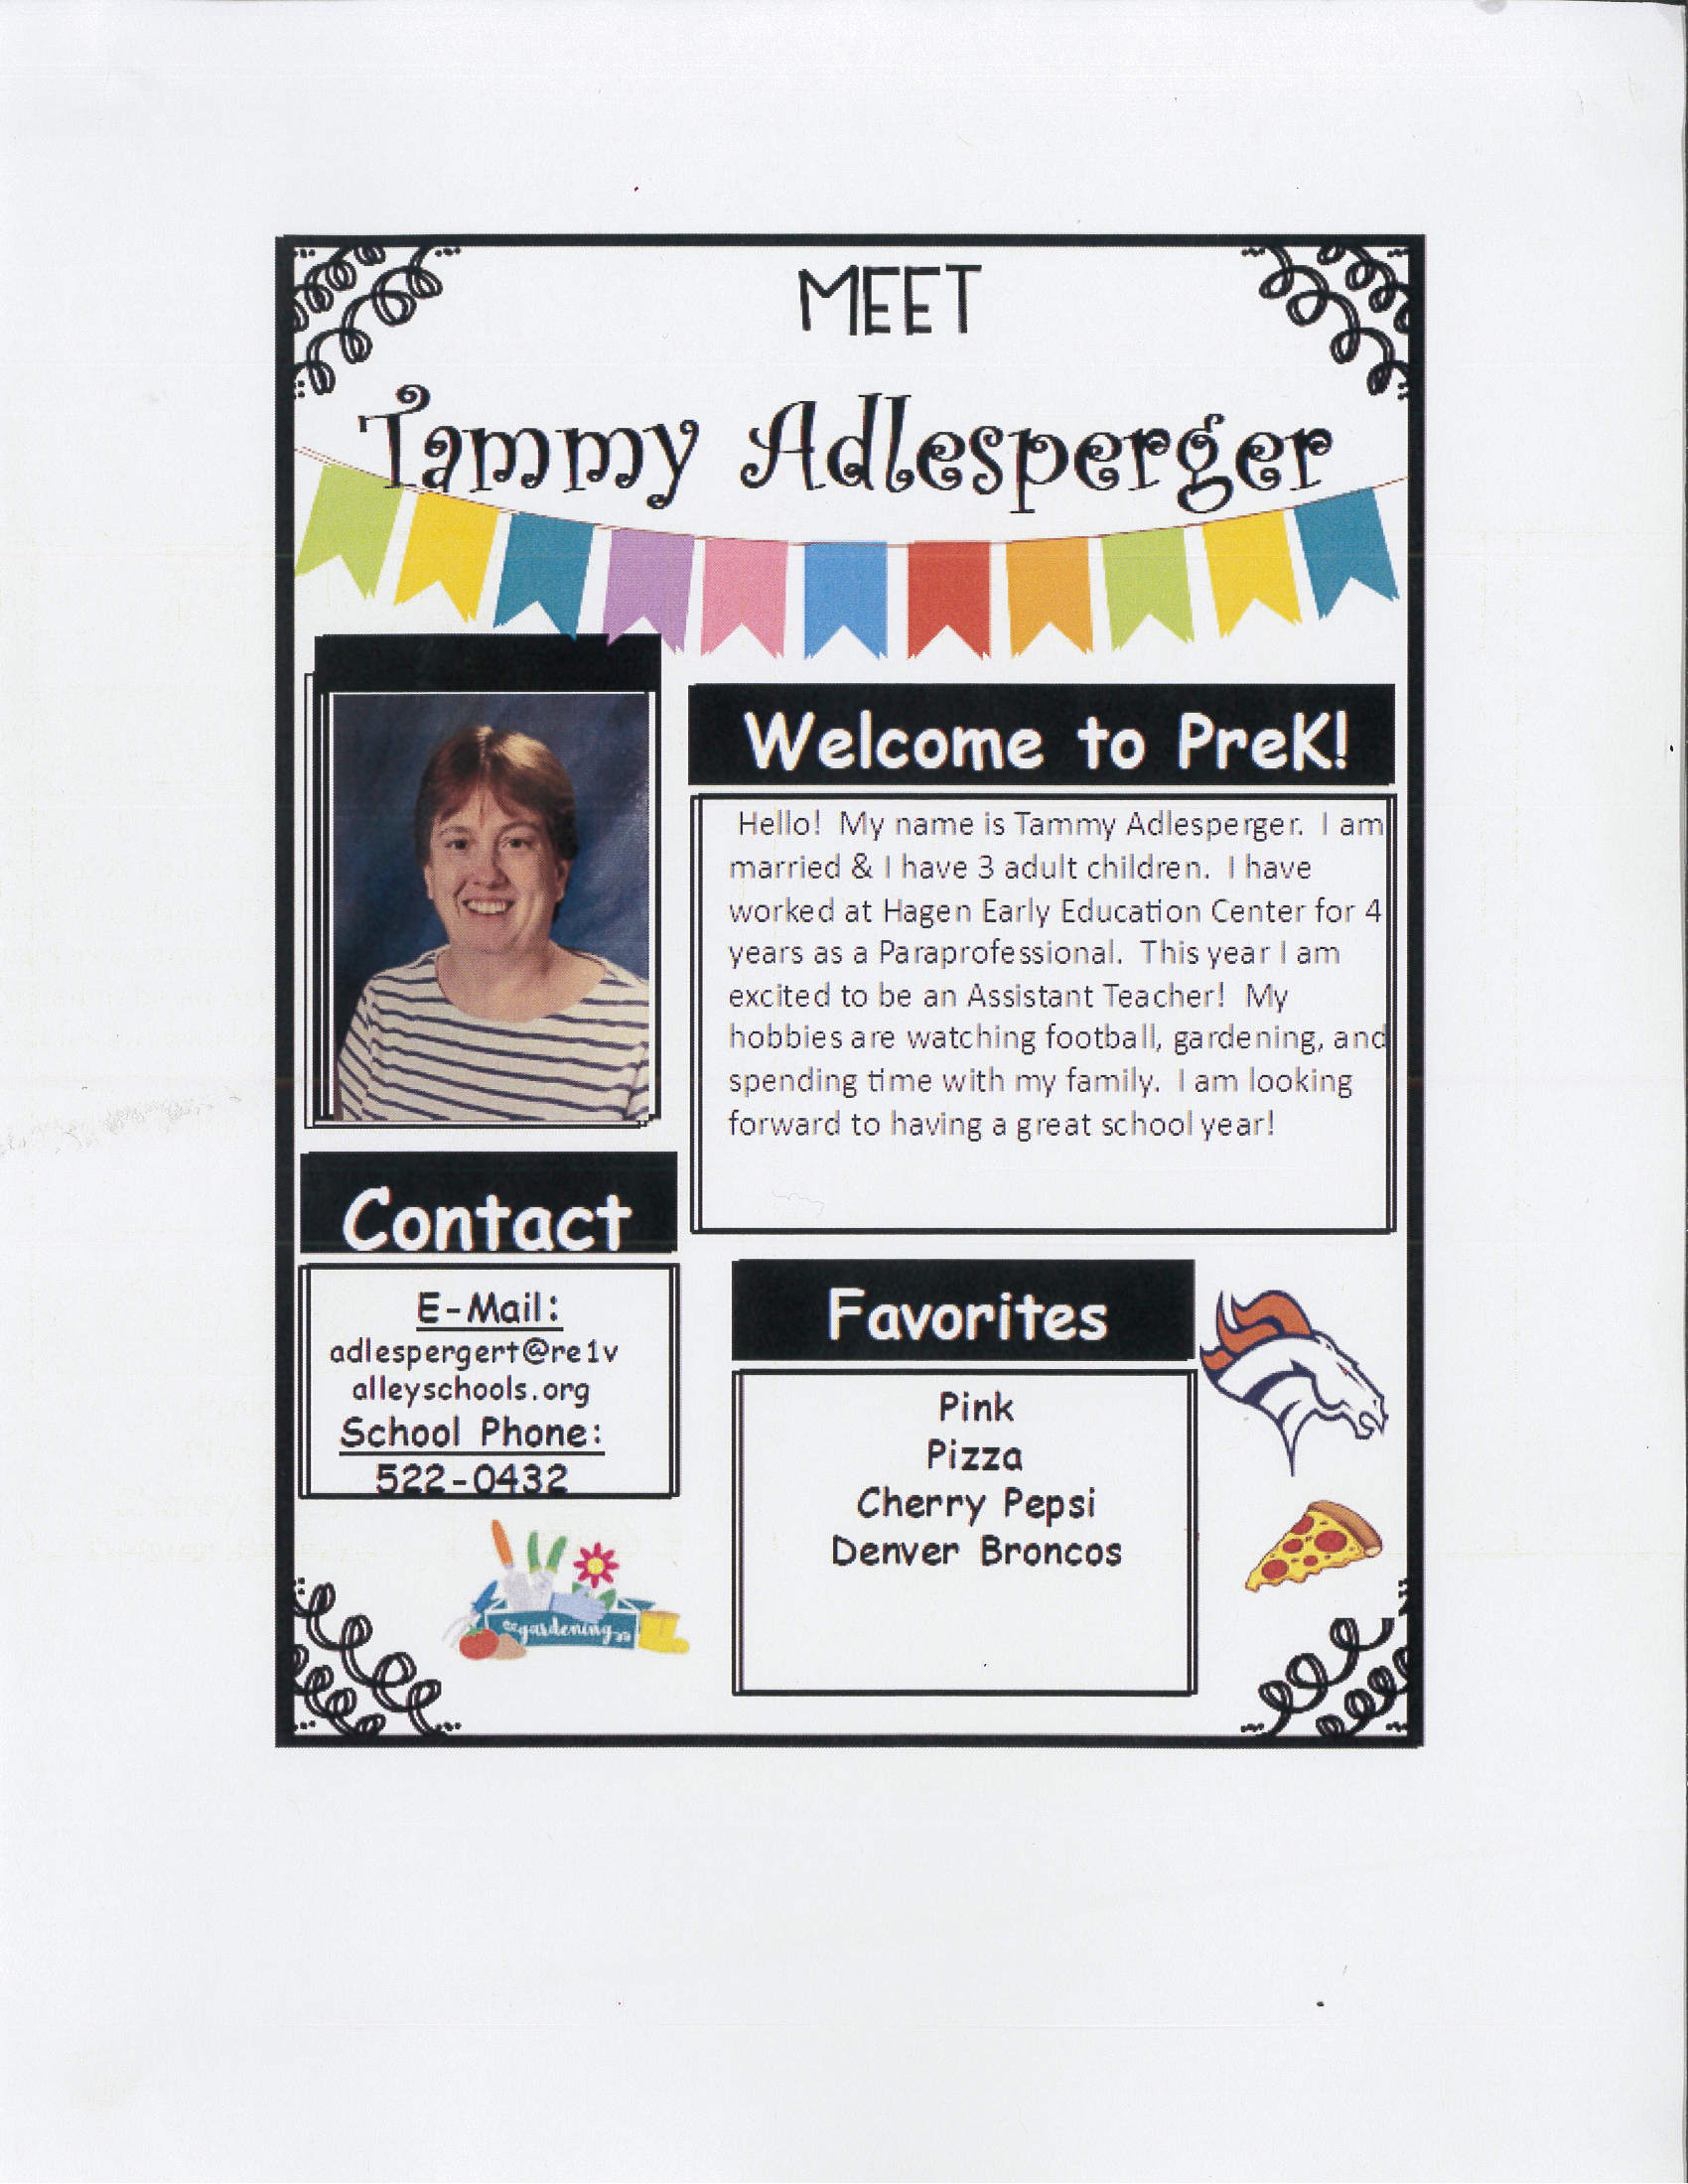 Tammy Aldesperger - Meet the Teacher